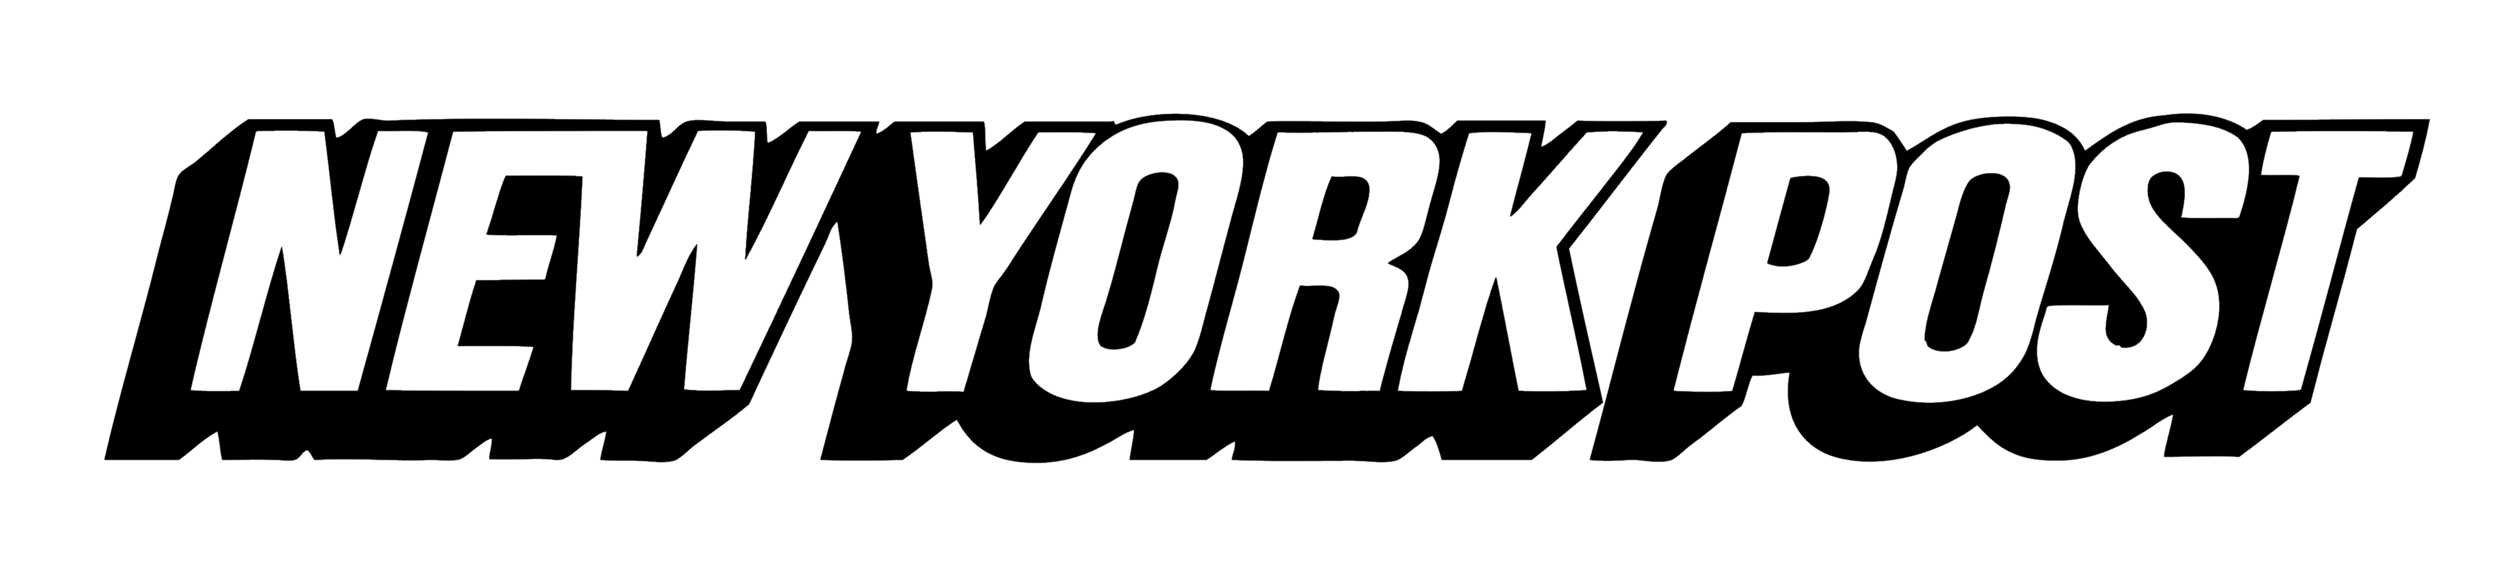 New_York_Post_logo_NYP.png